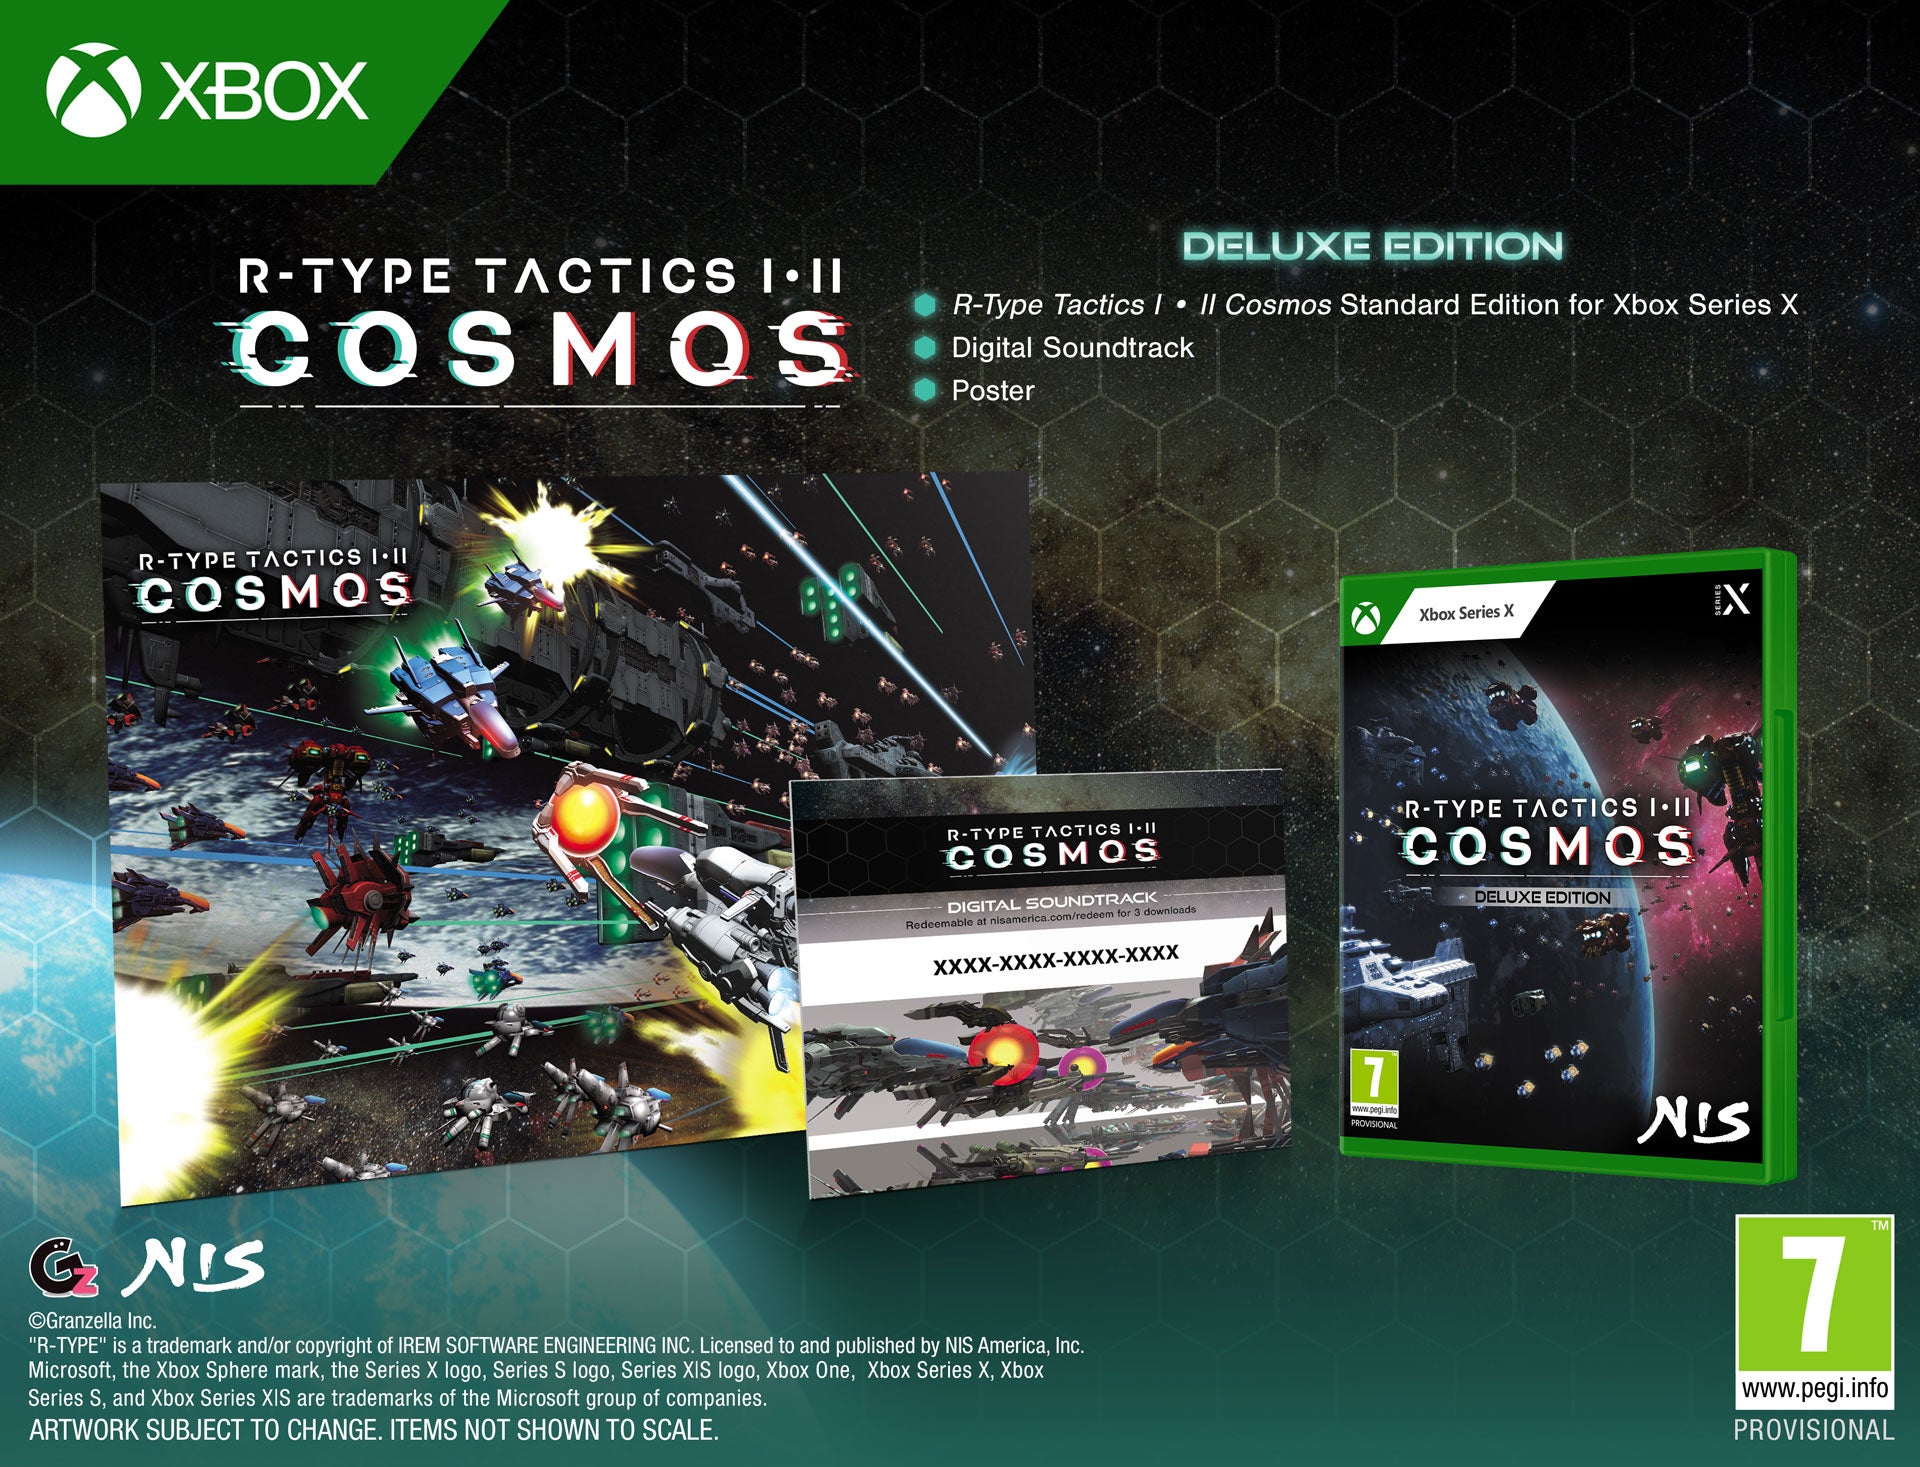 R-Type Tactics I • II COSMOS - Deluxe Edition - Xbox Series X